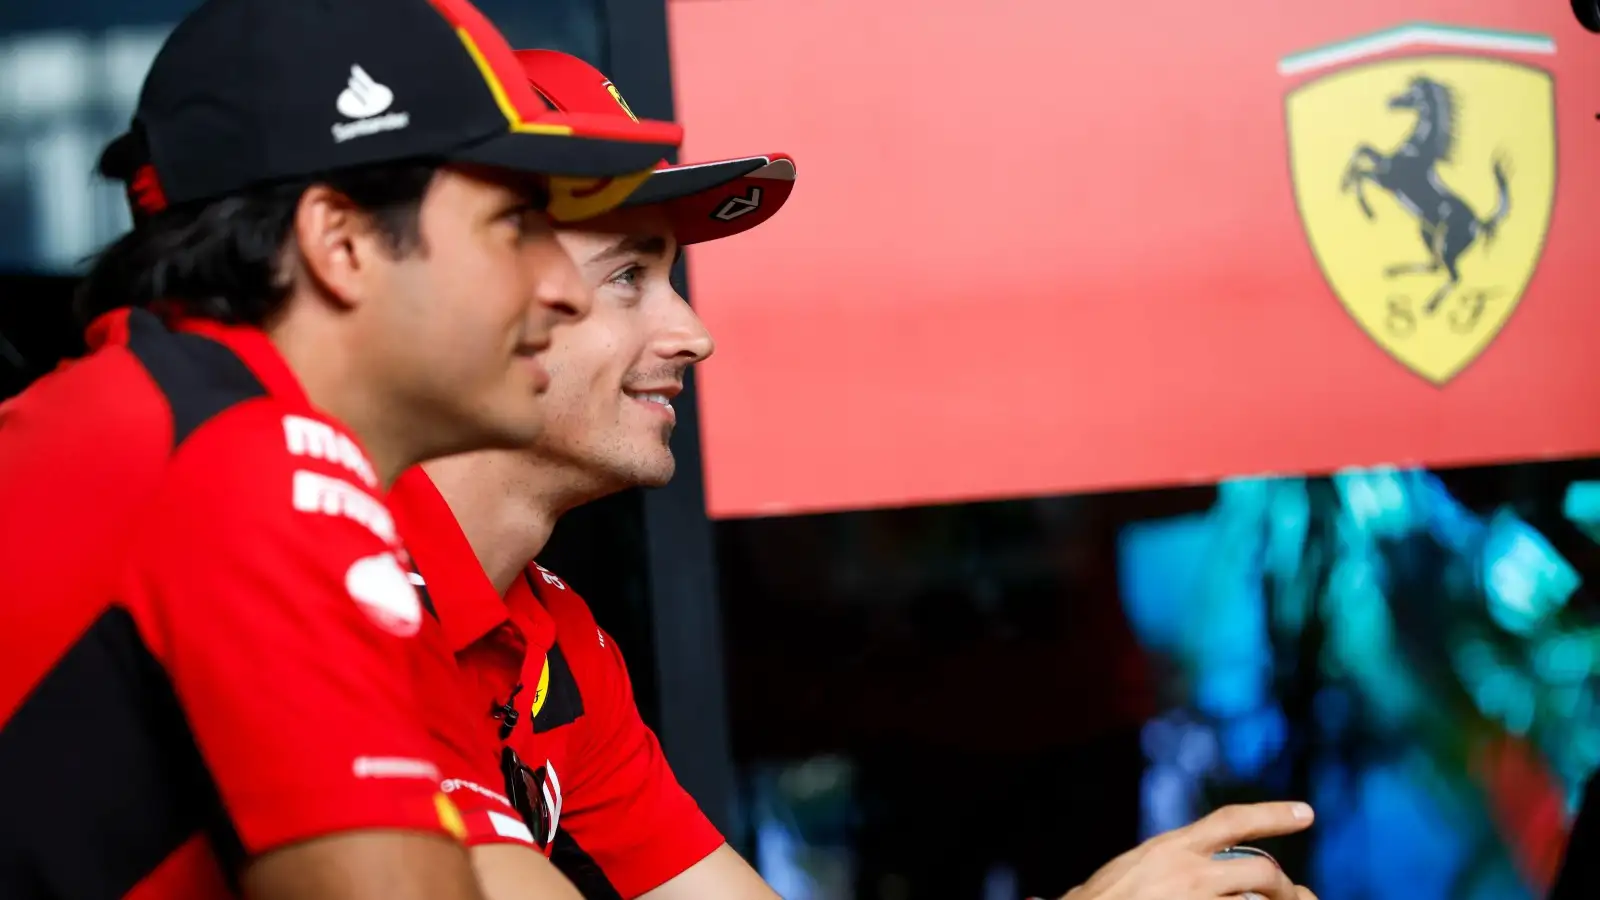 Carlos Sainz and Charles Leclerc smiling at the 2023 Saudi Arabian Grand Prix.